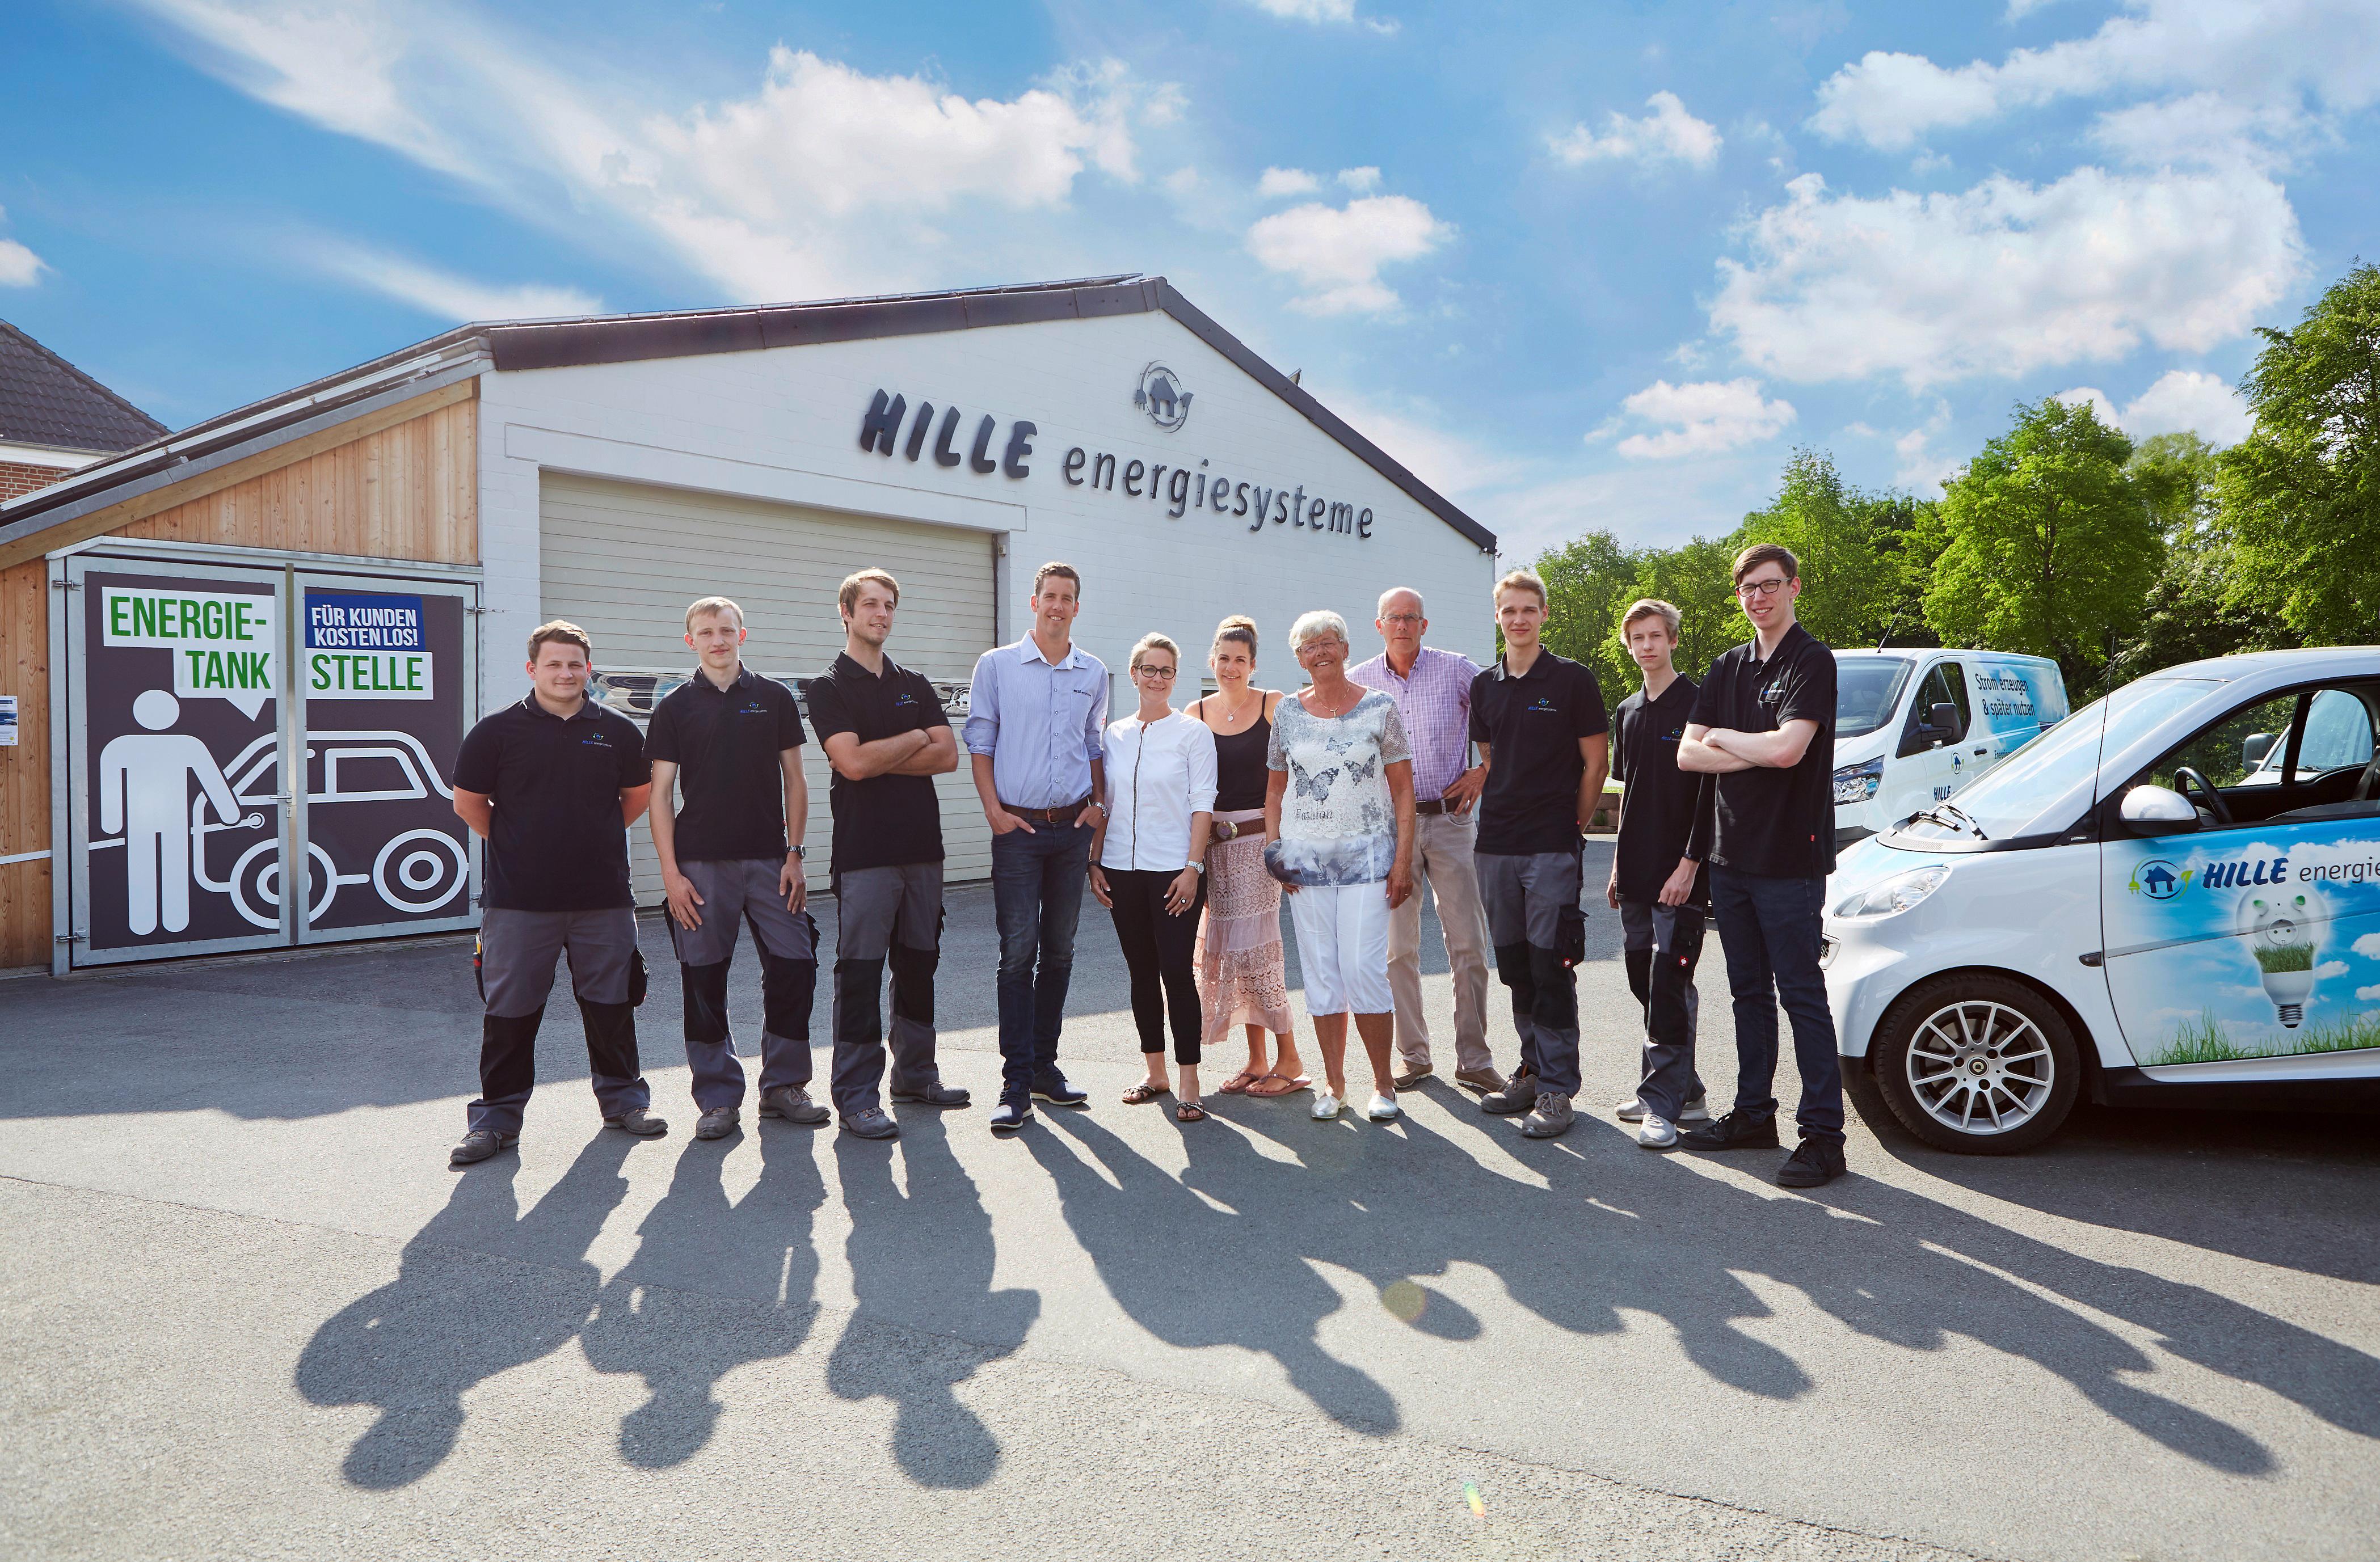 Bilder Hille energiesysteme GmbH & Co. KG